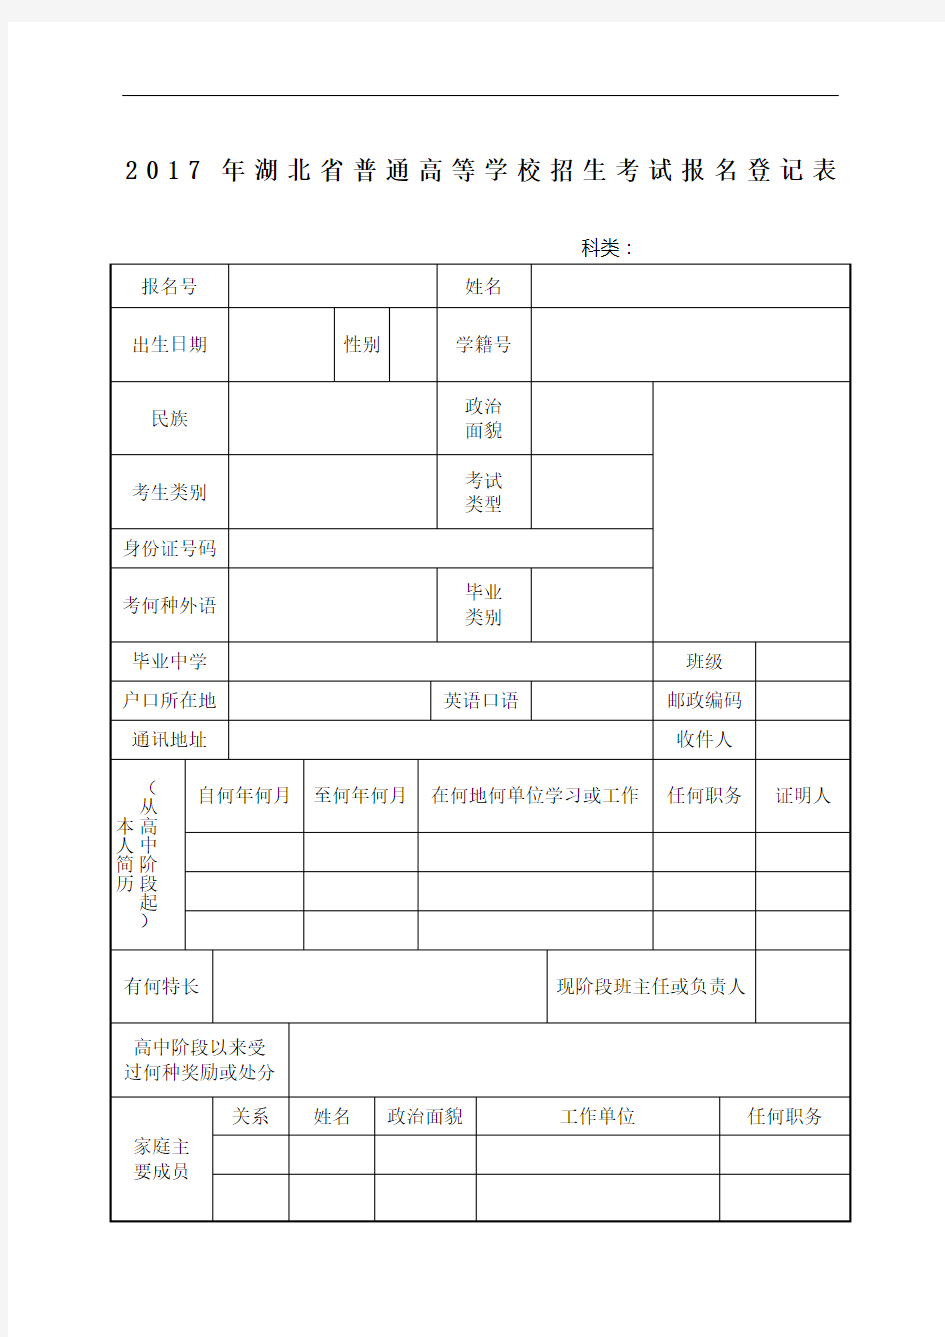 湖北省普通高等学校招生考试报名登记表